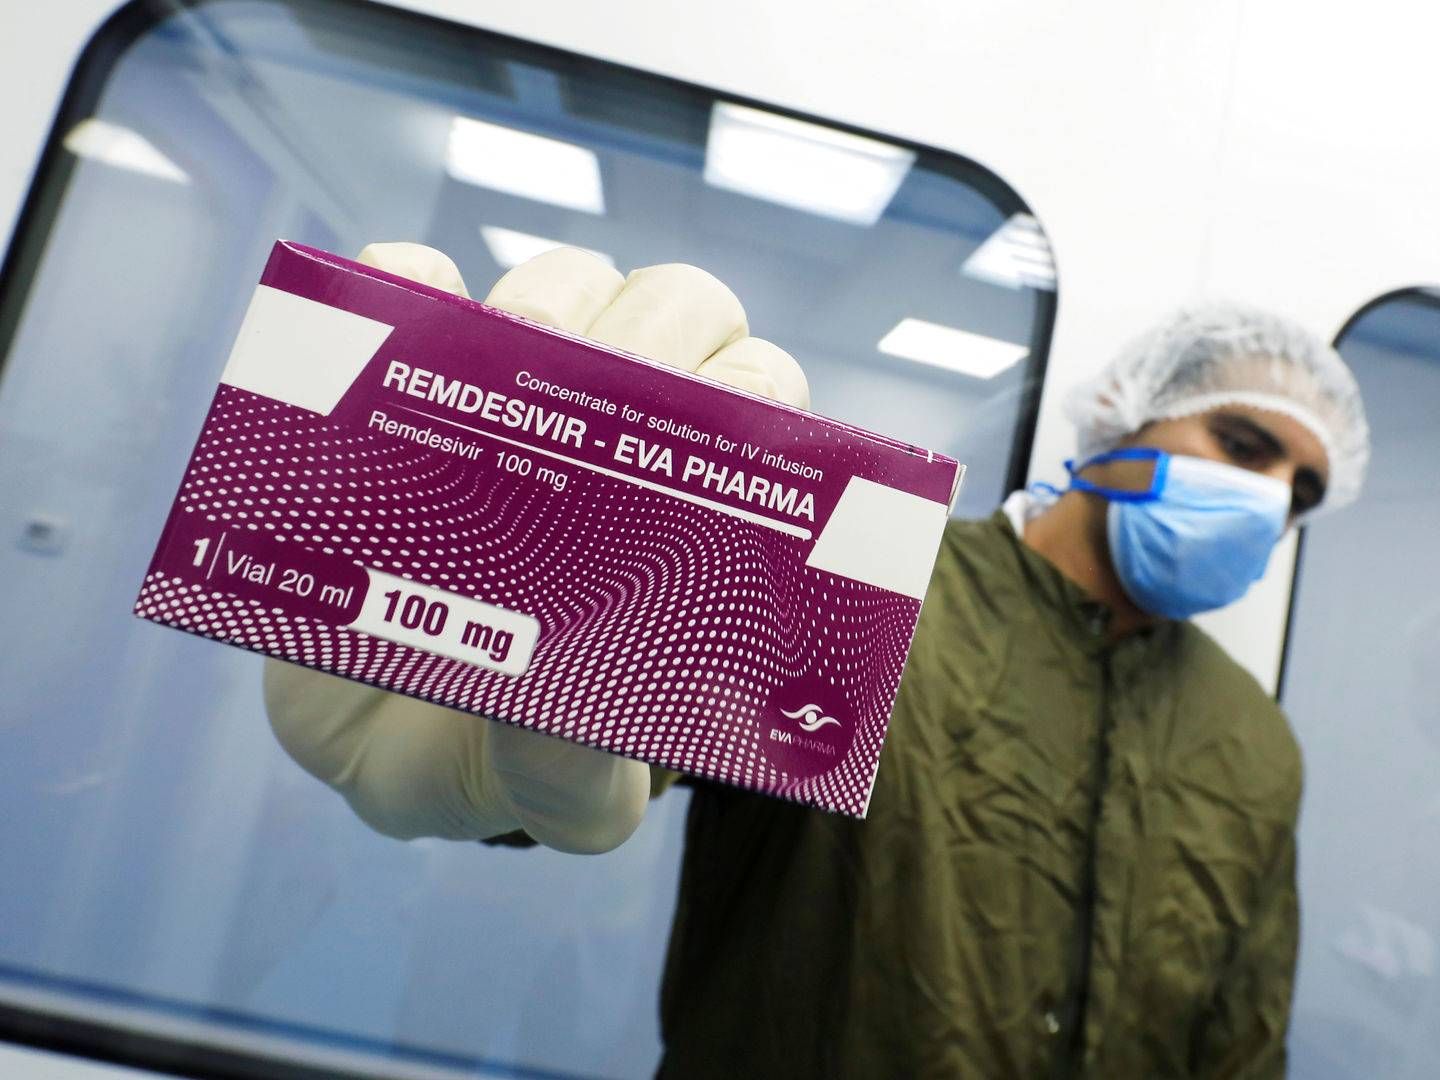 Remdesivir - her i en variant produceret af Eva Pharma - skal nu vurderes af FDA i USA. | Foto: Amr Abdallah Dalsh/Reuters/Ritzau Scanpix